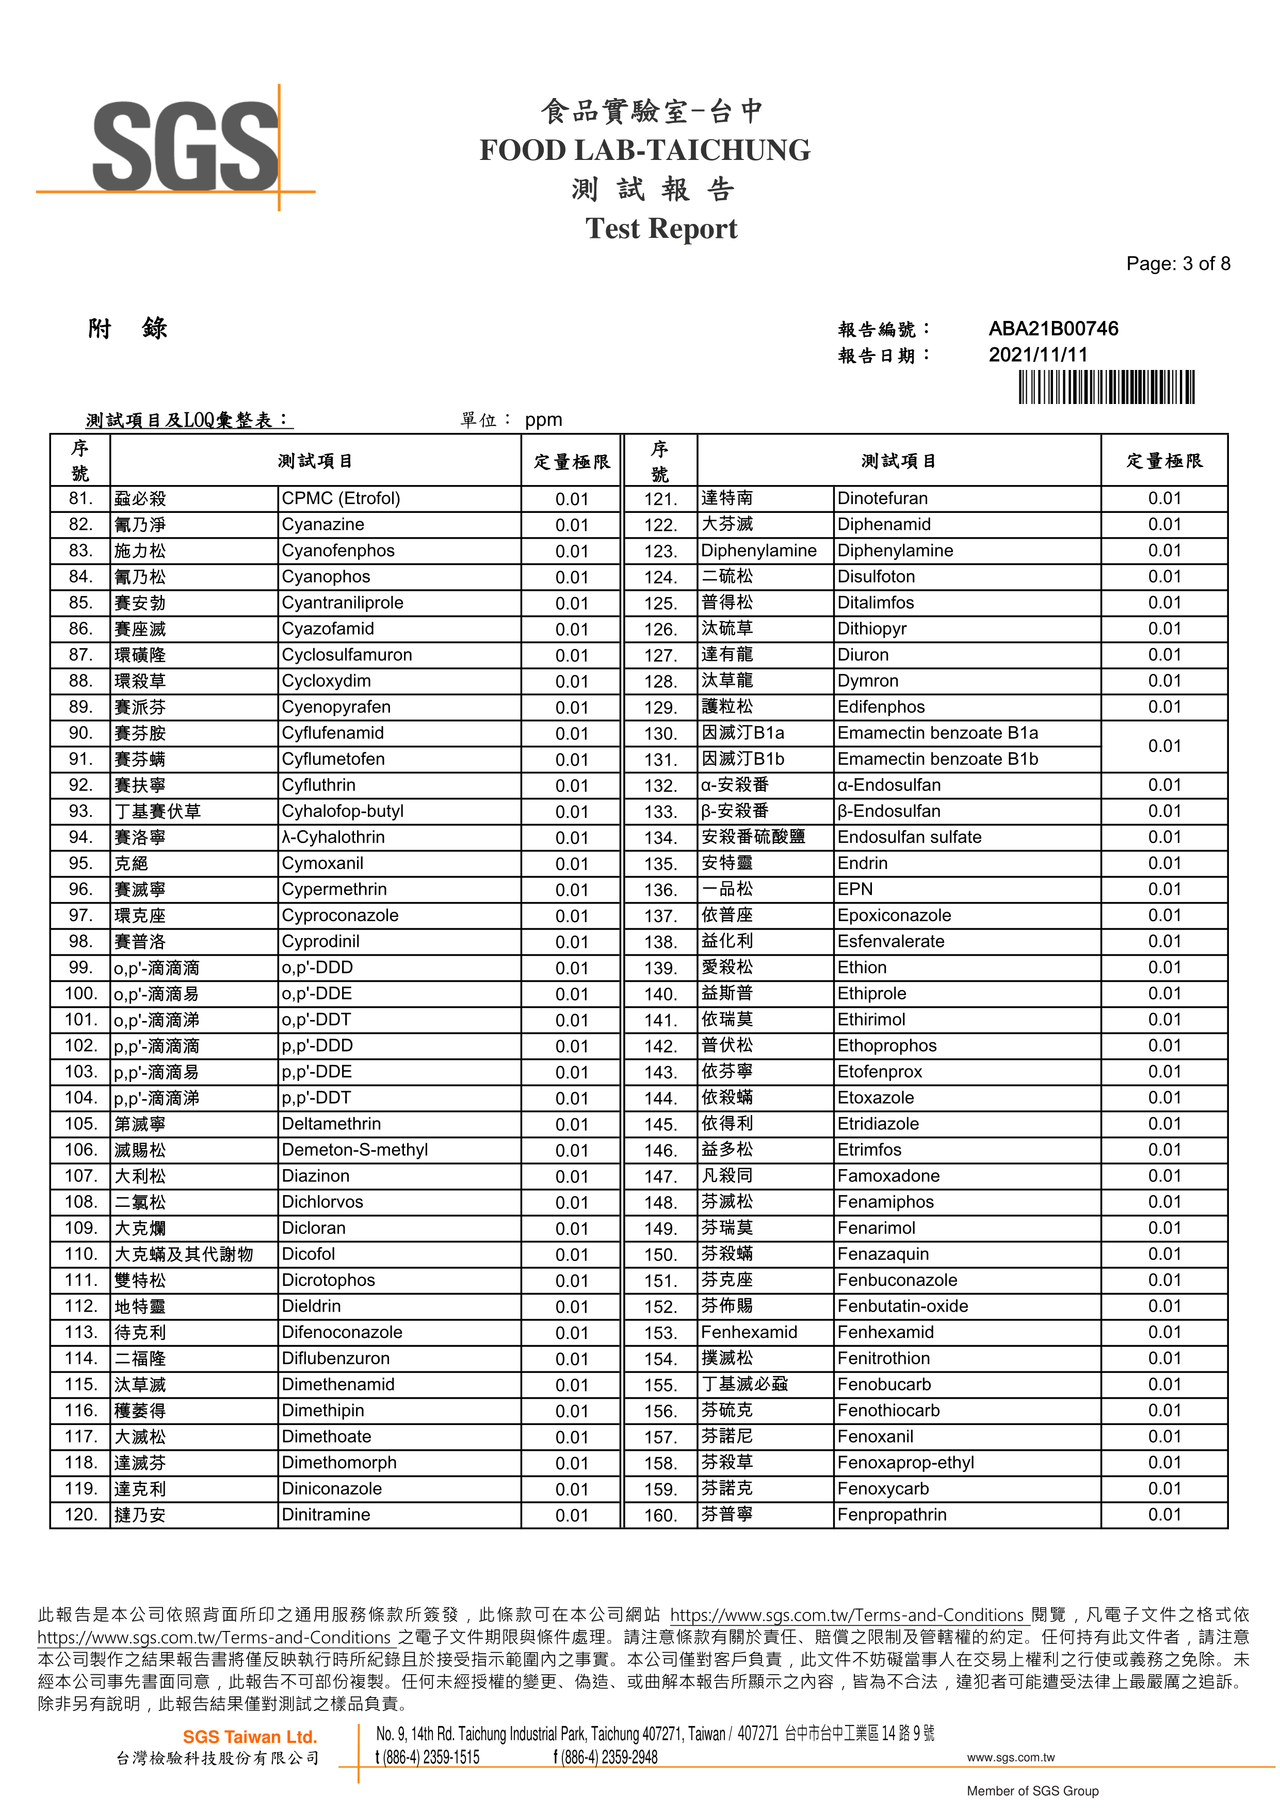 彩椒菇菇寶寶粥-農藥殘留380檢驗報告2021.11.11